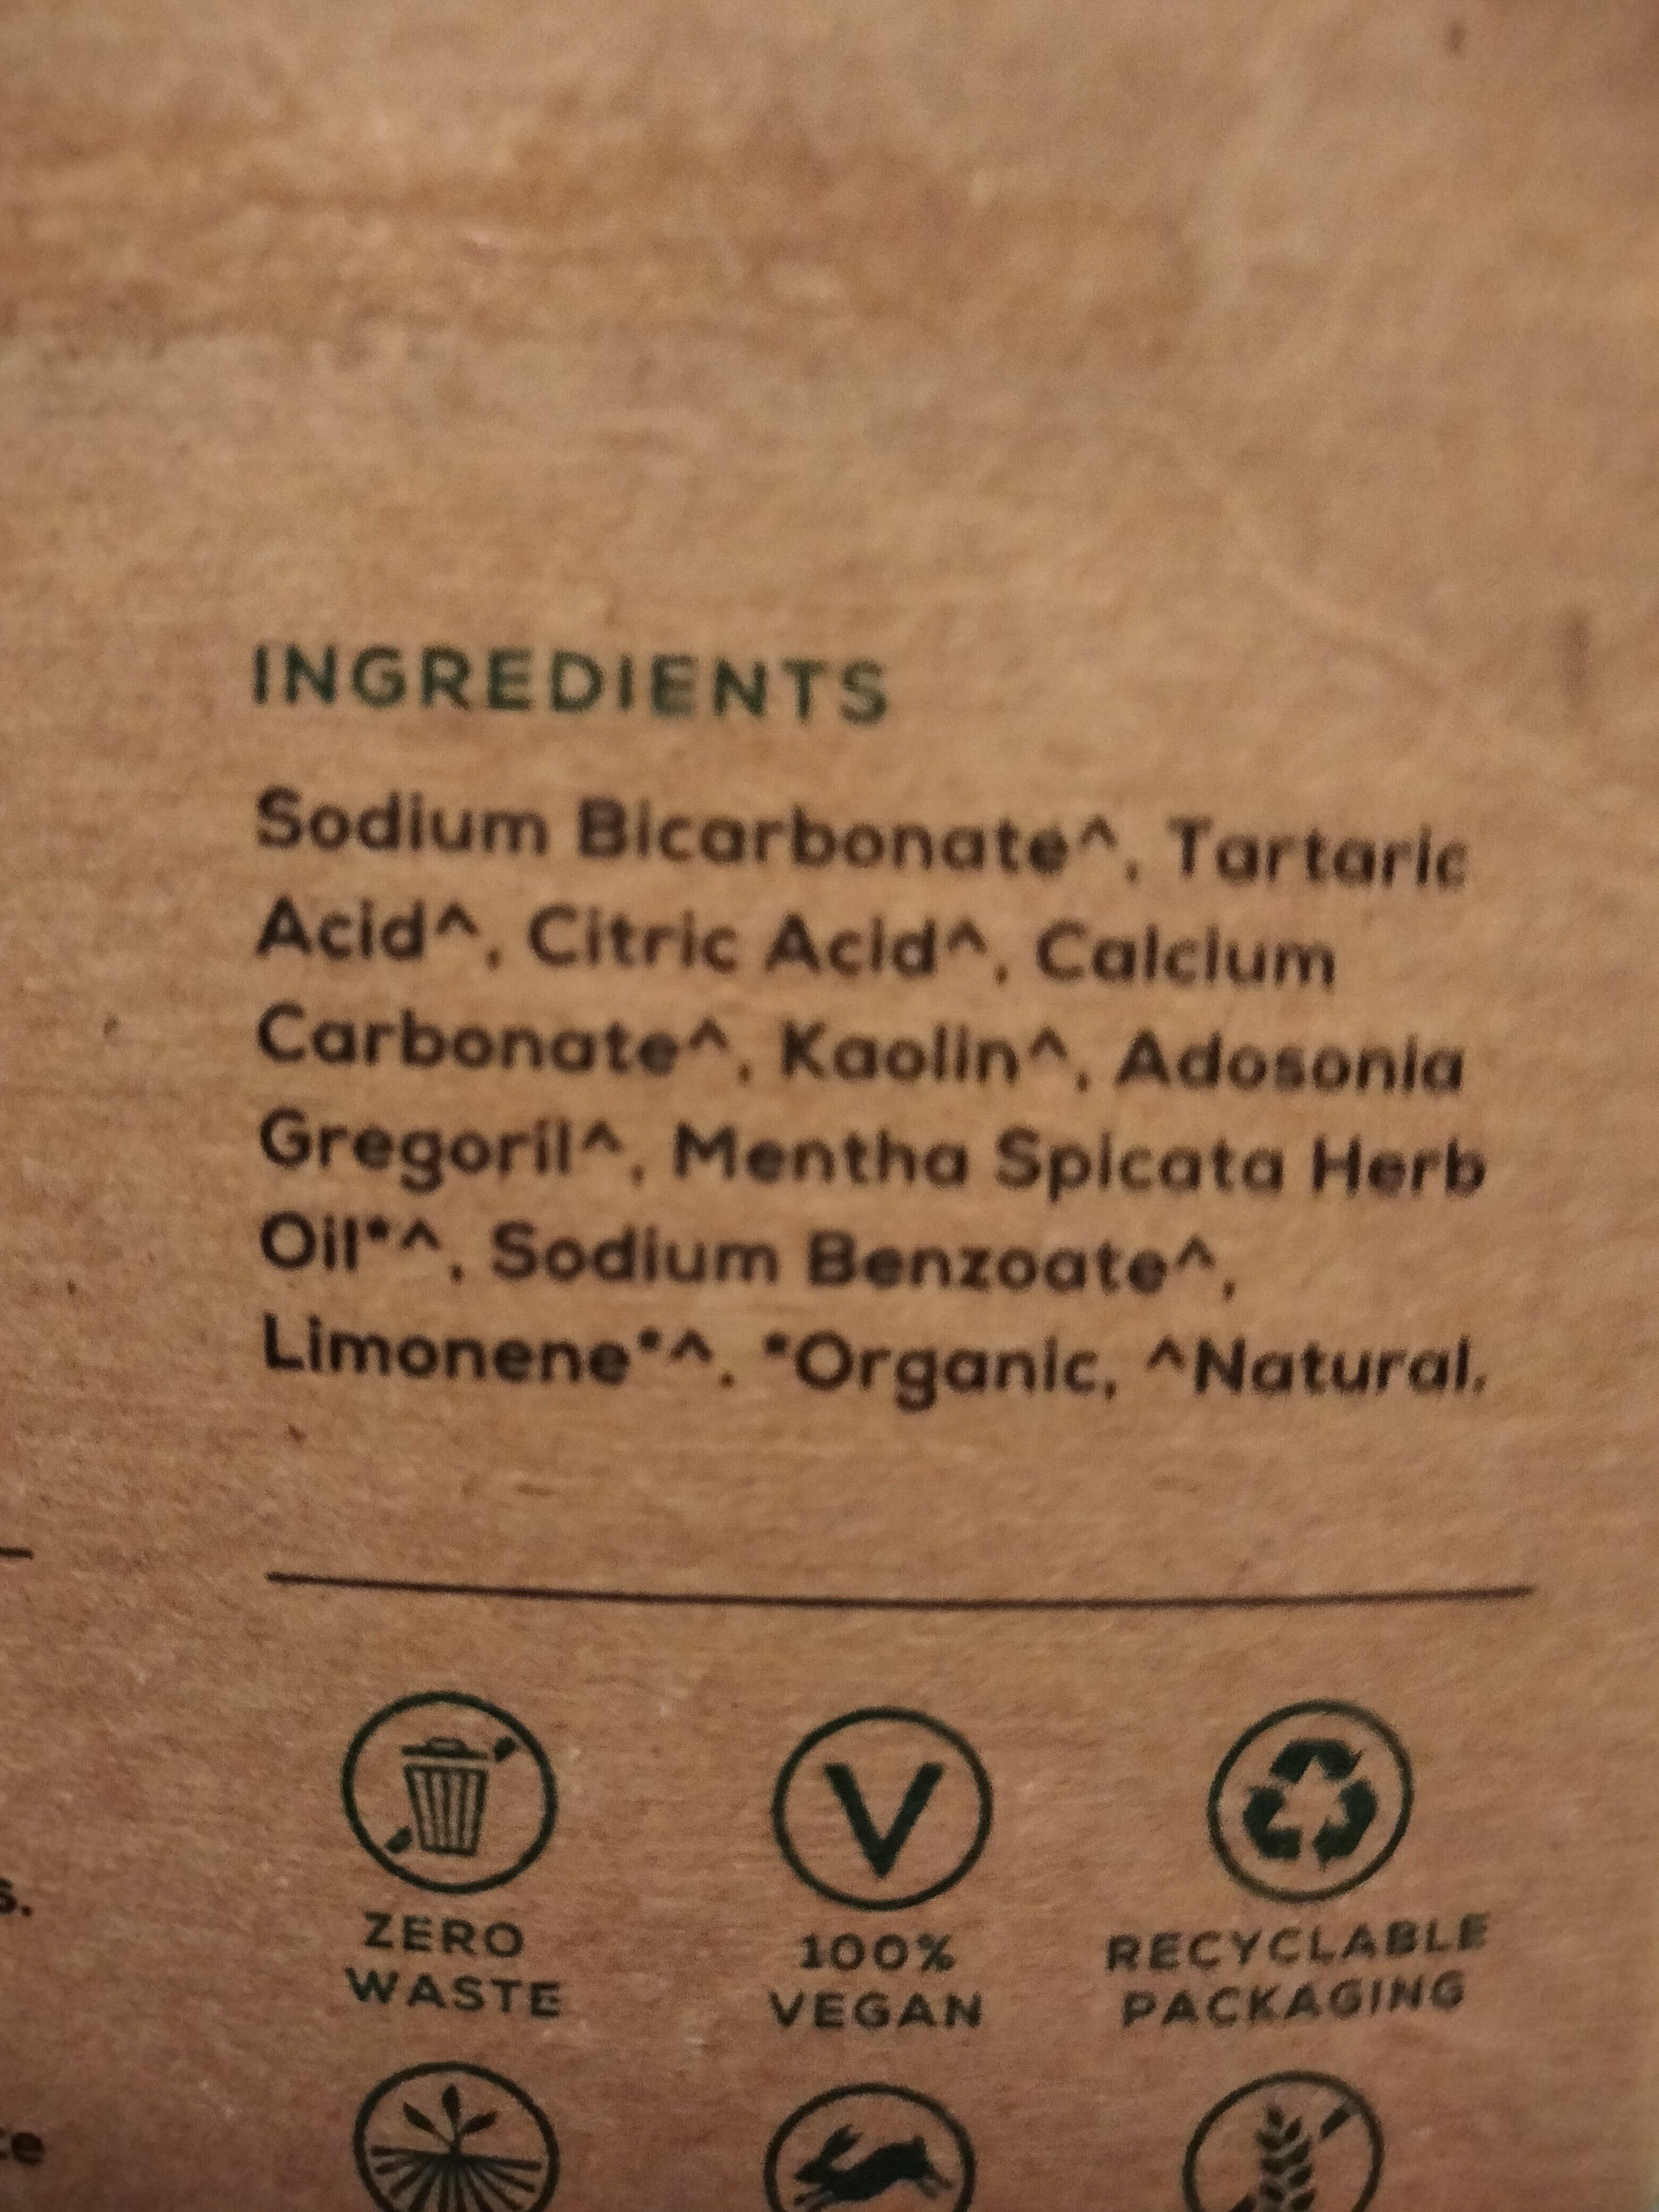 georganics toothpaste tablets - Ingredientes - en